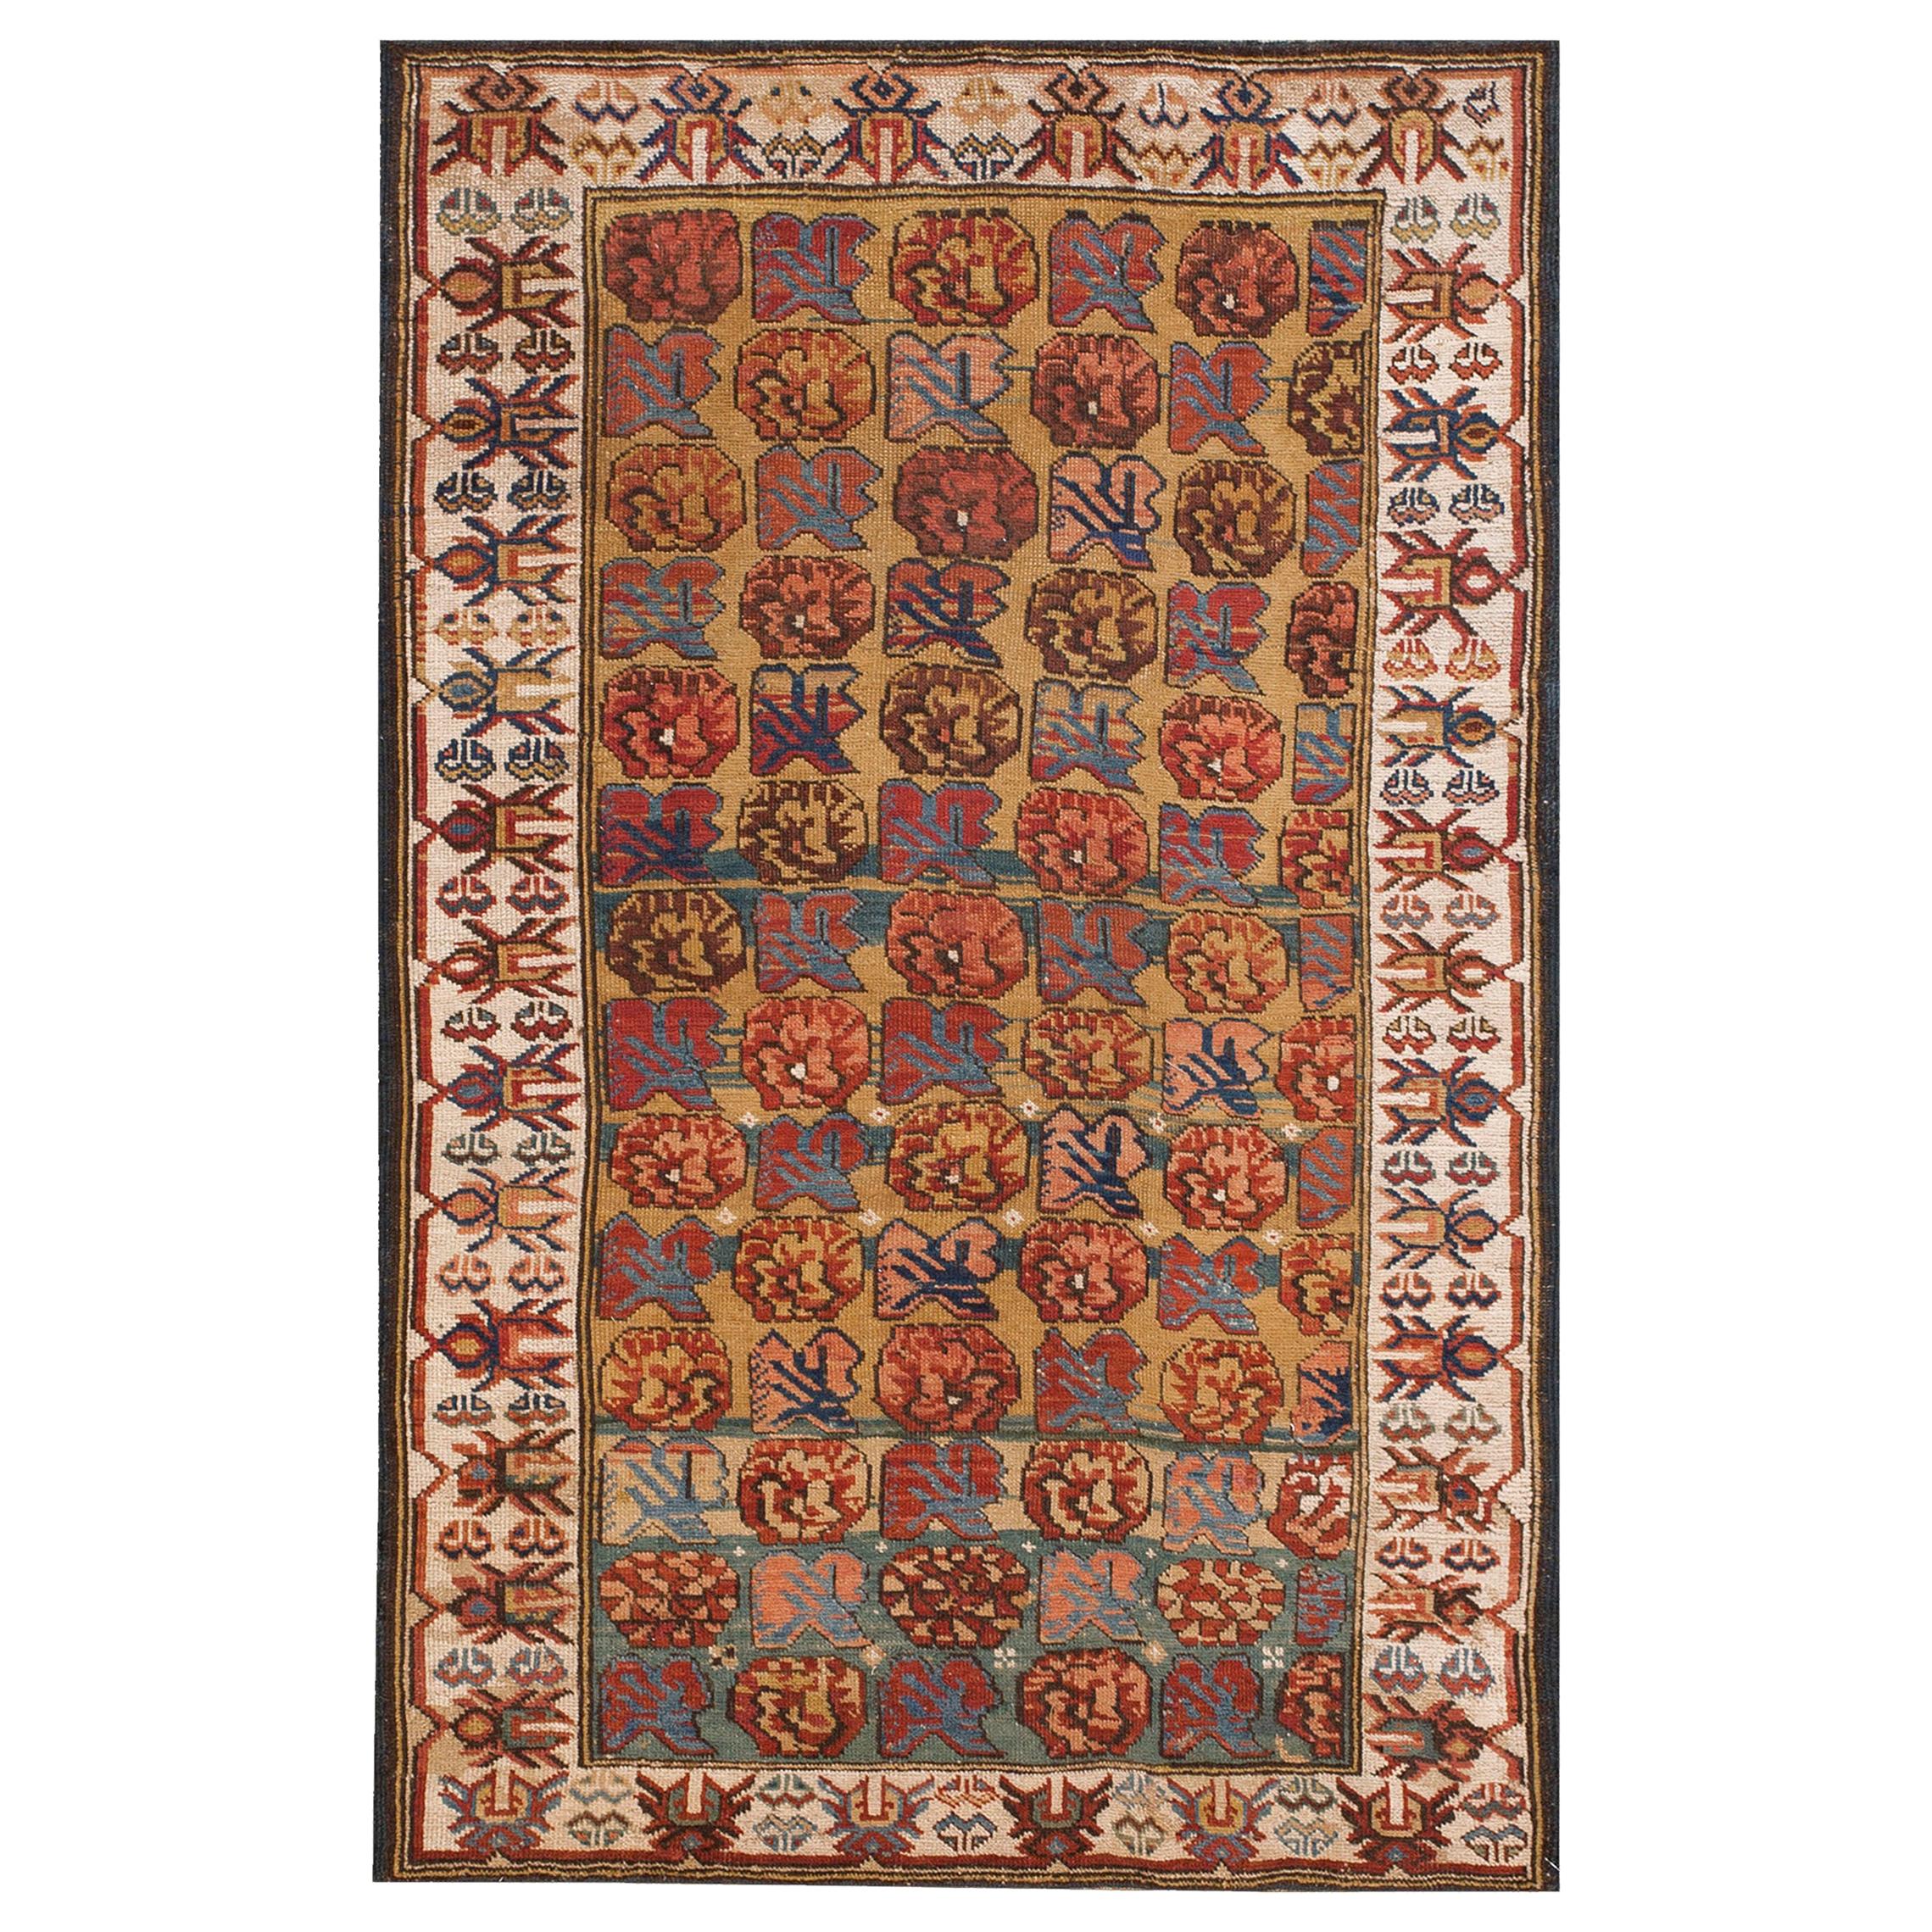 19th Century Caucasian Kuba  Zeichur Carpet ( 3'3" x 5' - 99 x 152 ) For Sale